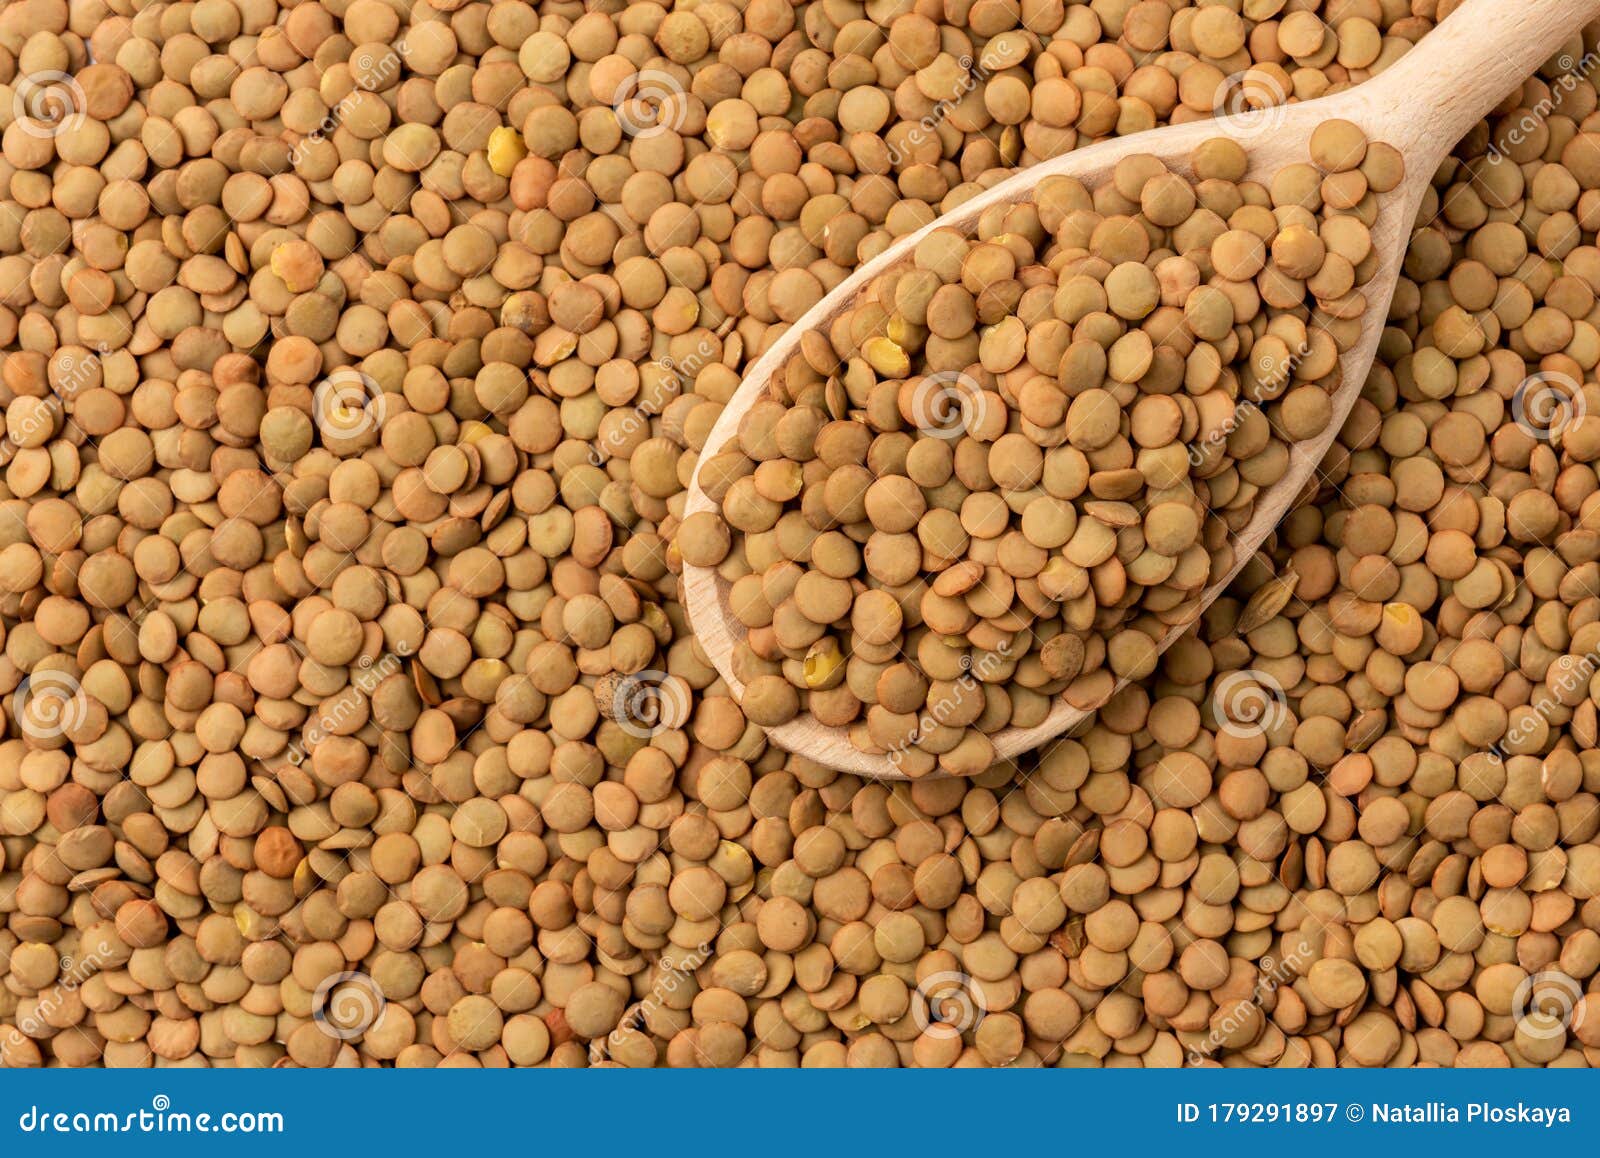 木干绿色扁豆的匙子 库存图片. 图片 包括有 干燥, 质量, 扁豆, 烘干, 成份, 食物, 关闭, 生活 - 17425983